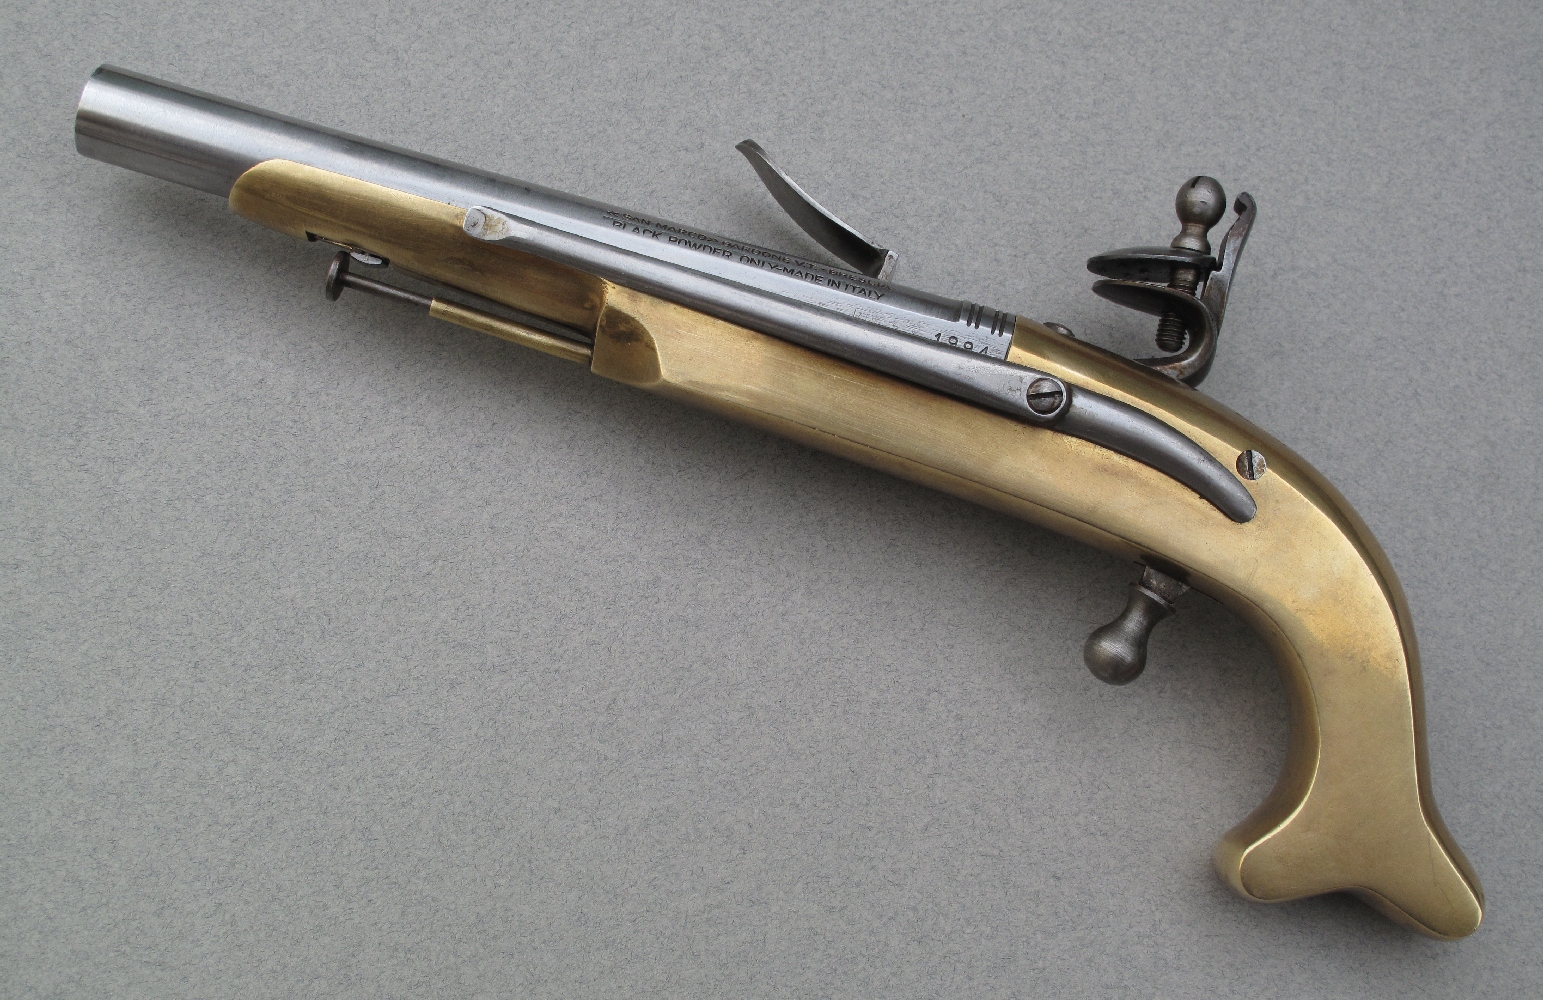 Les pistolets écossais des Highlands, dont ce modèle est une réplique, se singularisent par leur monture métallique, en bronze ou en acier, par leur talon de poignée en forme de cornes ou comme ici de queue de carpe et par le présence d’un crochet de ceinture.